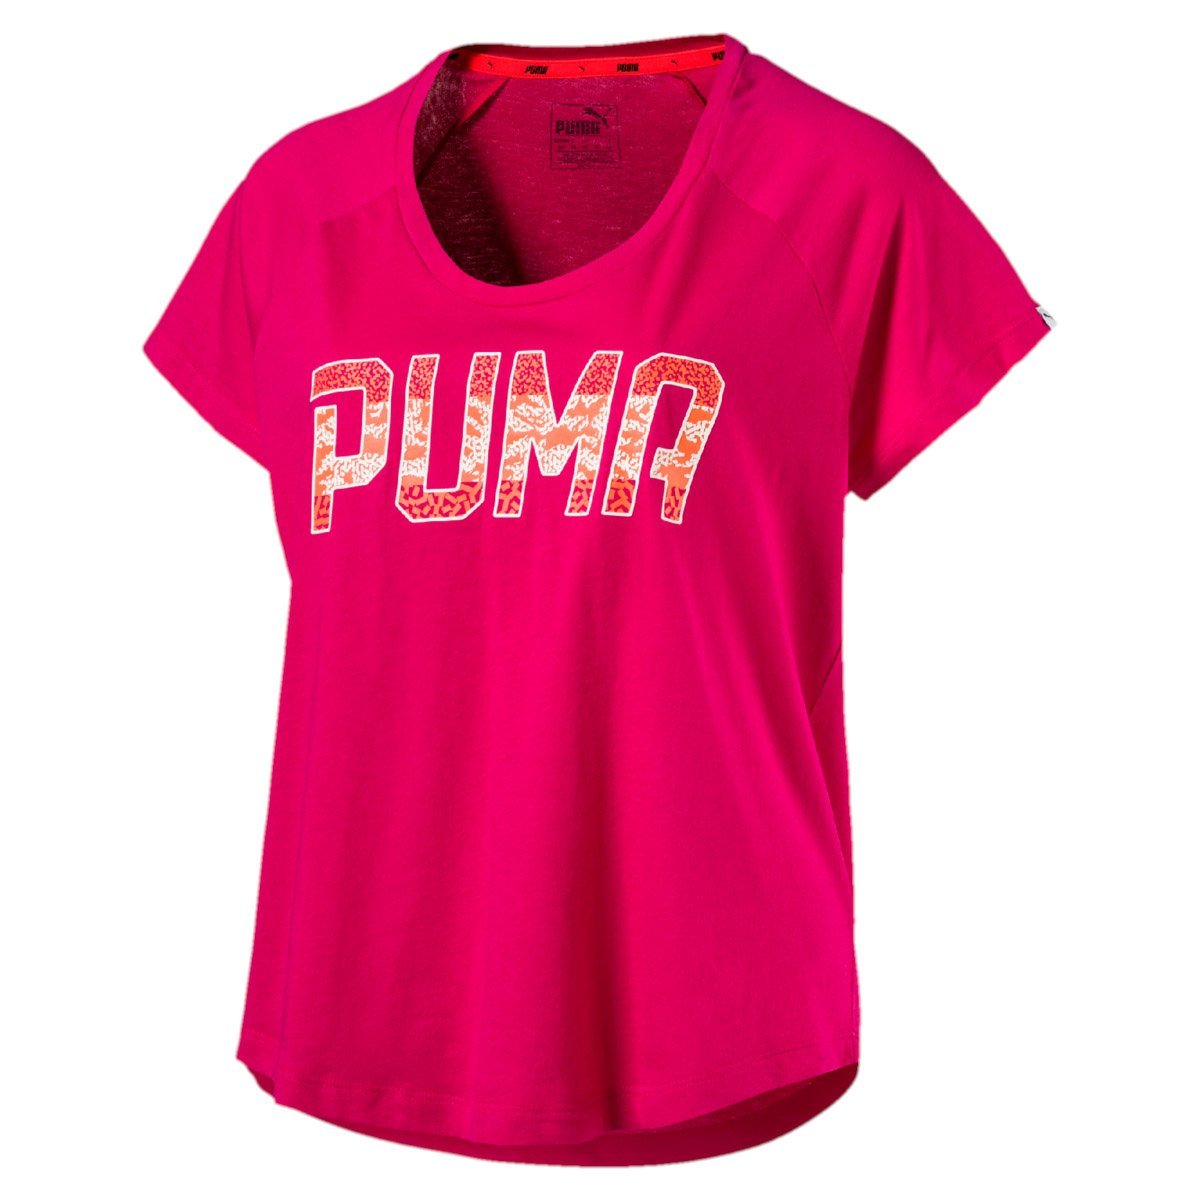 Playera Casual Athletic Fashion Puma - Dama